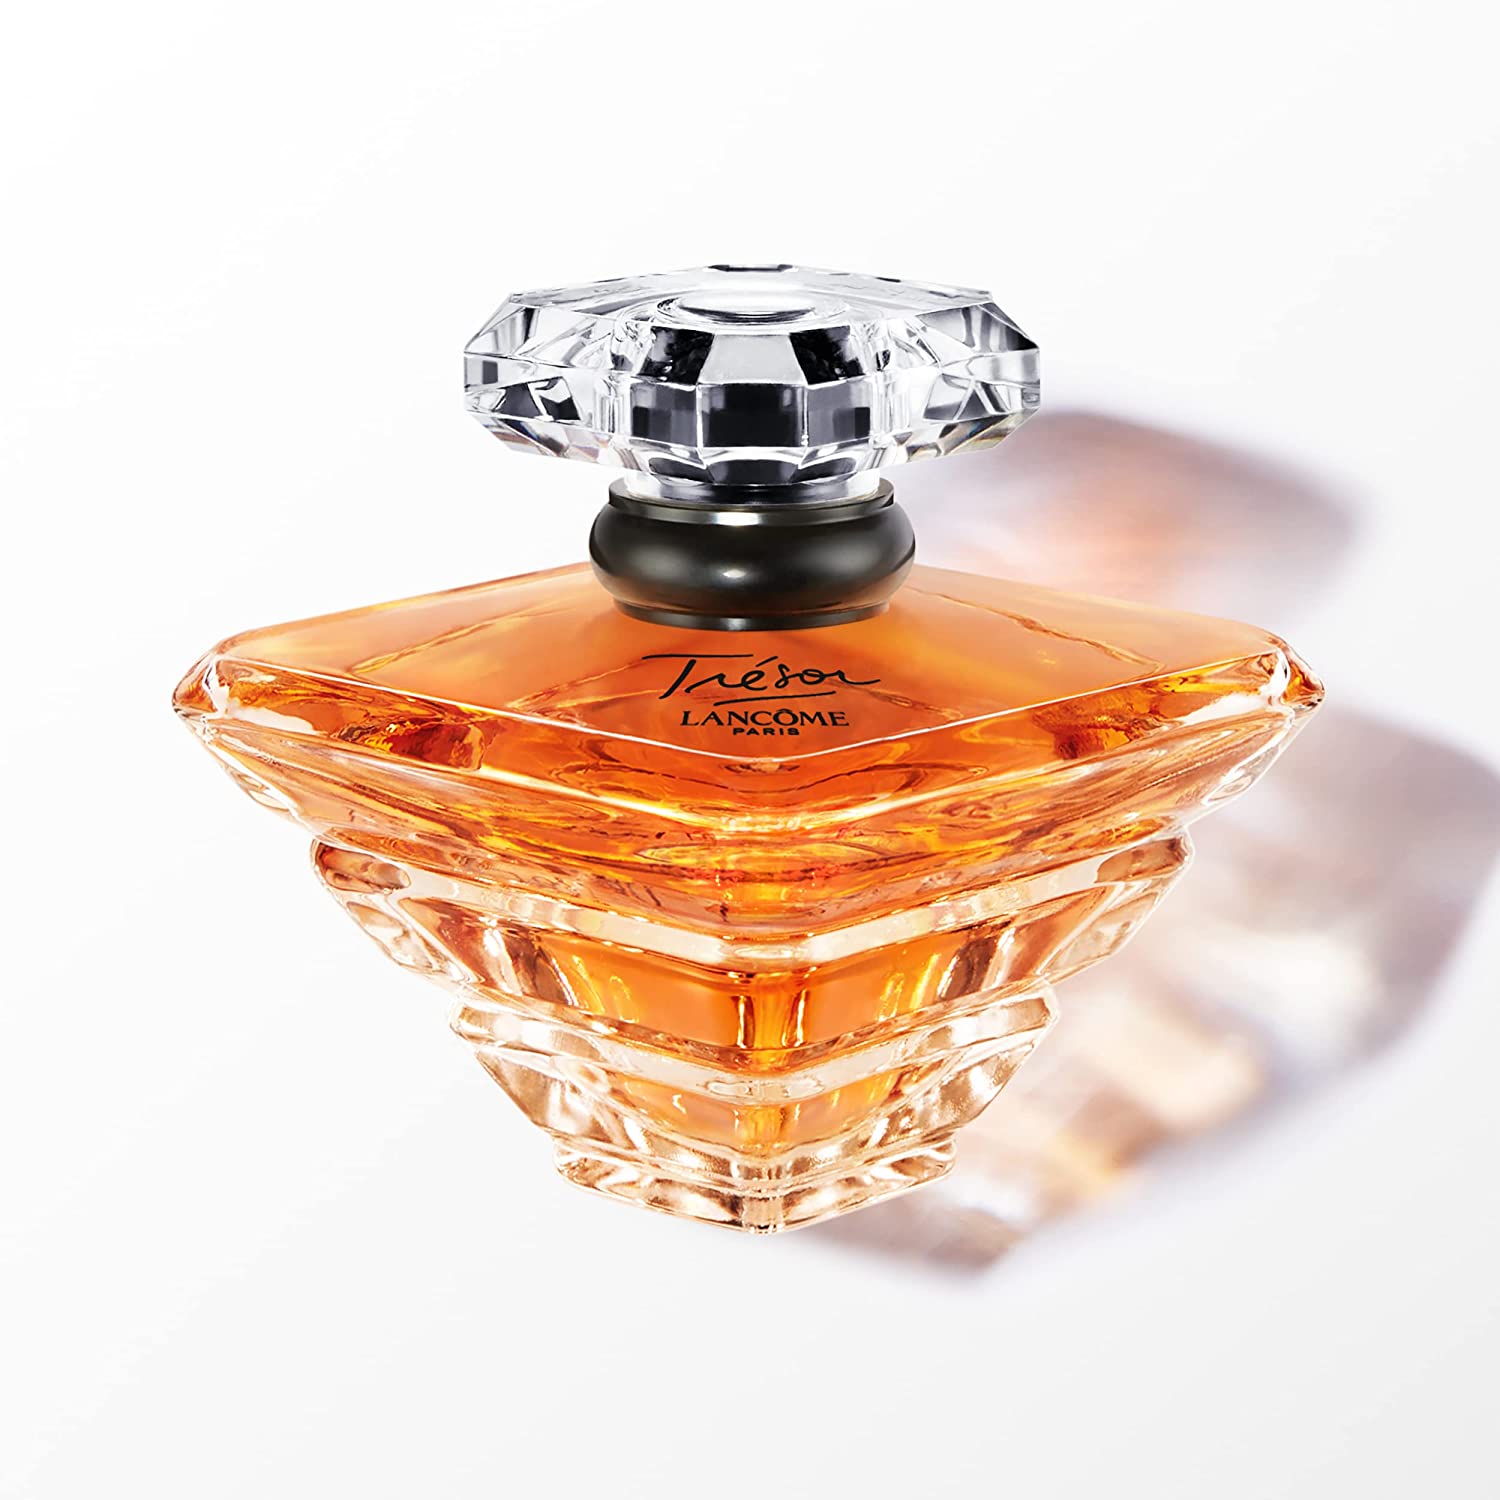 ''LANCOME PARIS Lancme Trsor Eau De Parfum  Womens PERFUME, 3.4 Fl Oz''